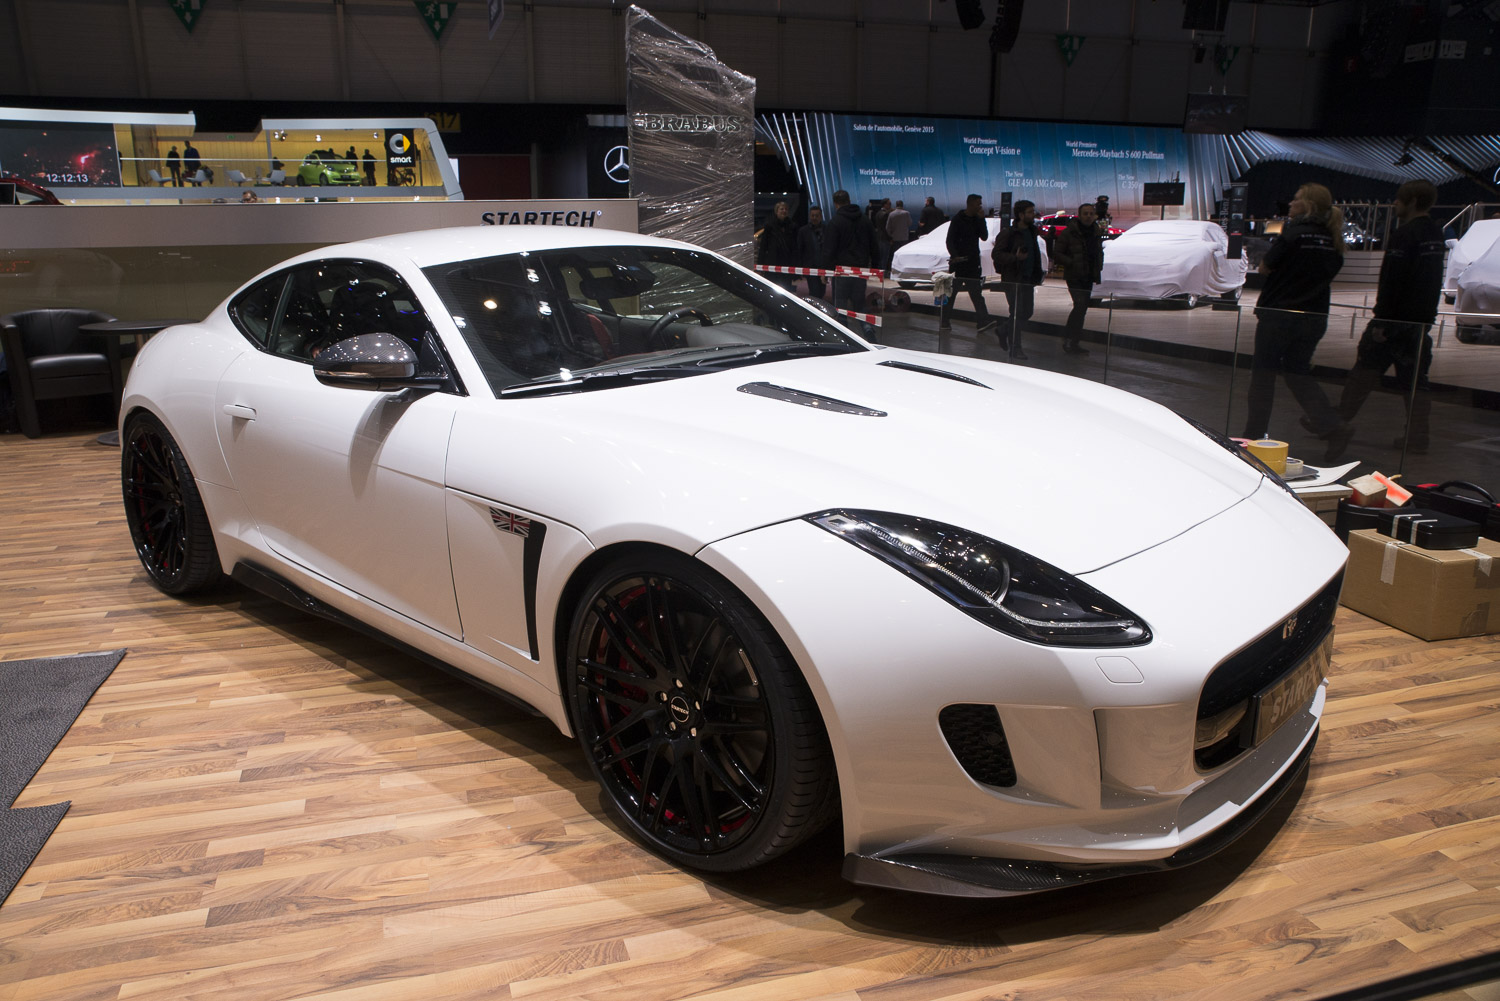 Genève 2015: Jaguar F-TYPE Coupe Startech